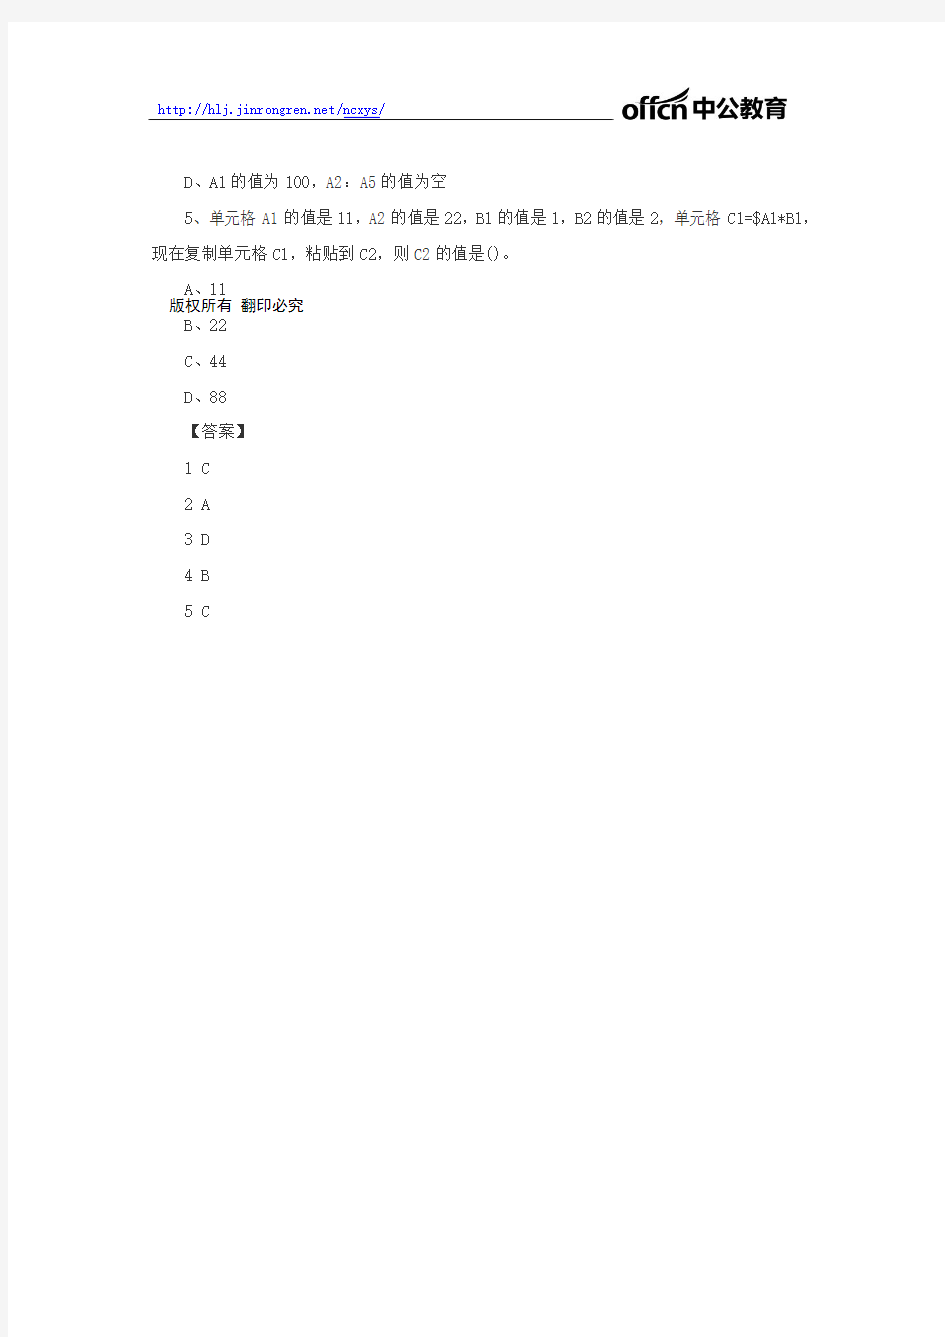 【模拟题】2018年黑龙江农信社笔试计算机2.8